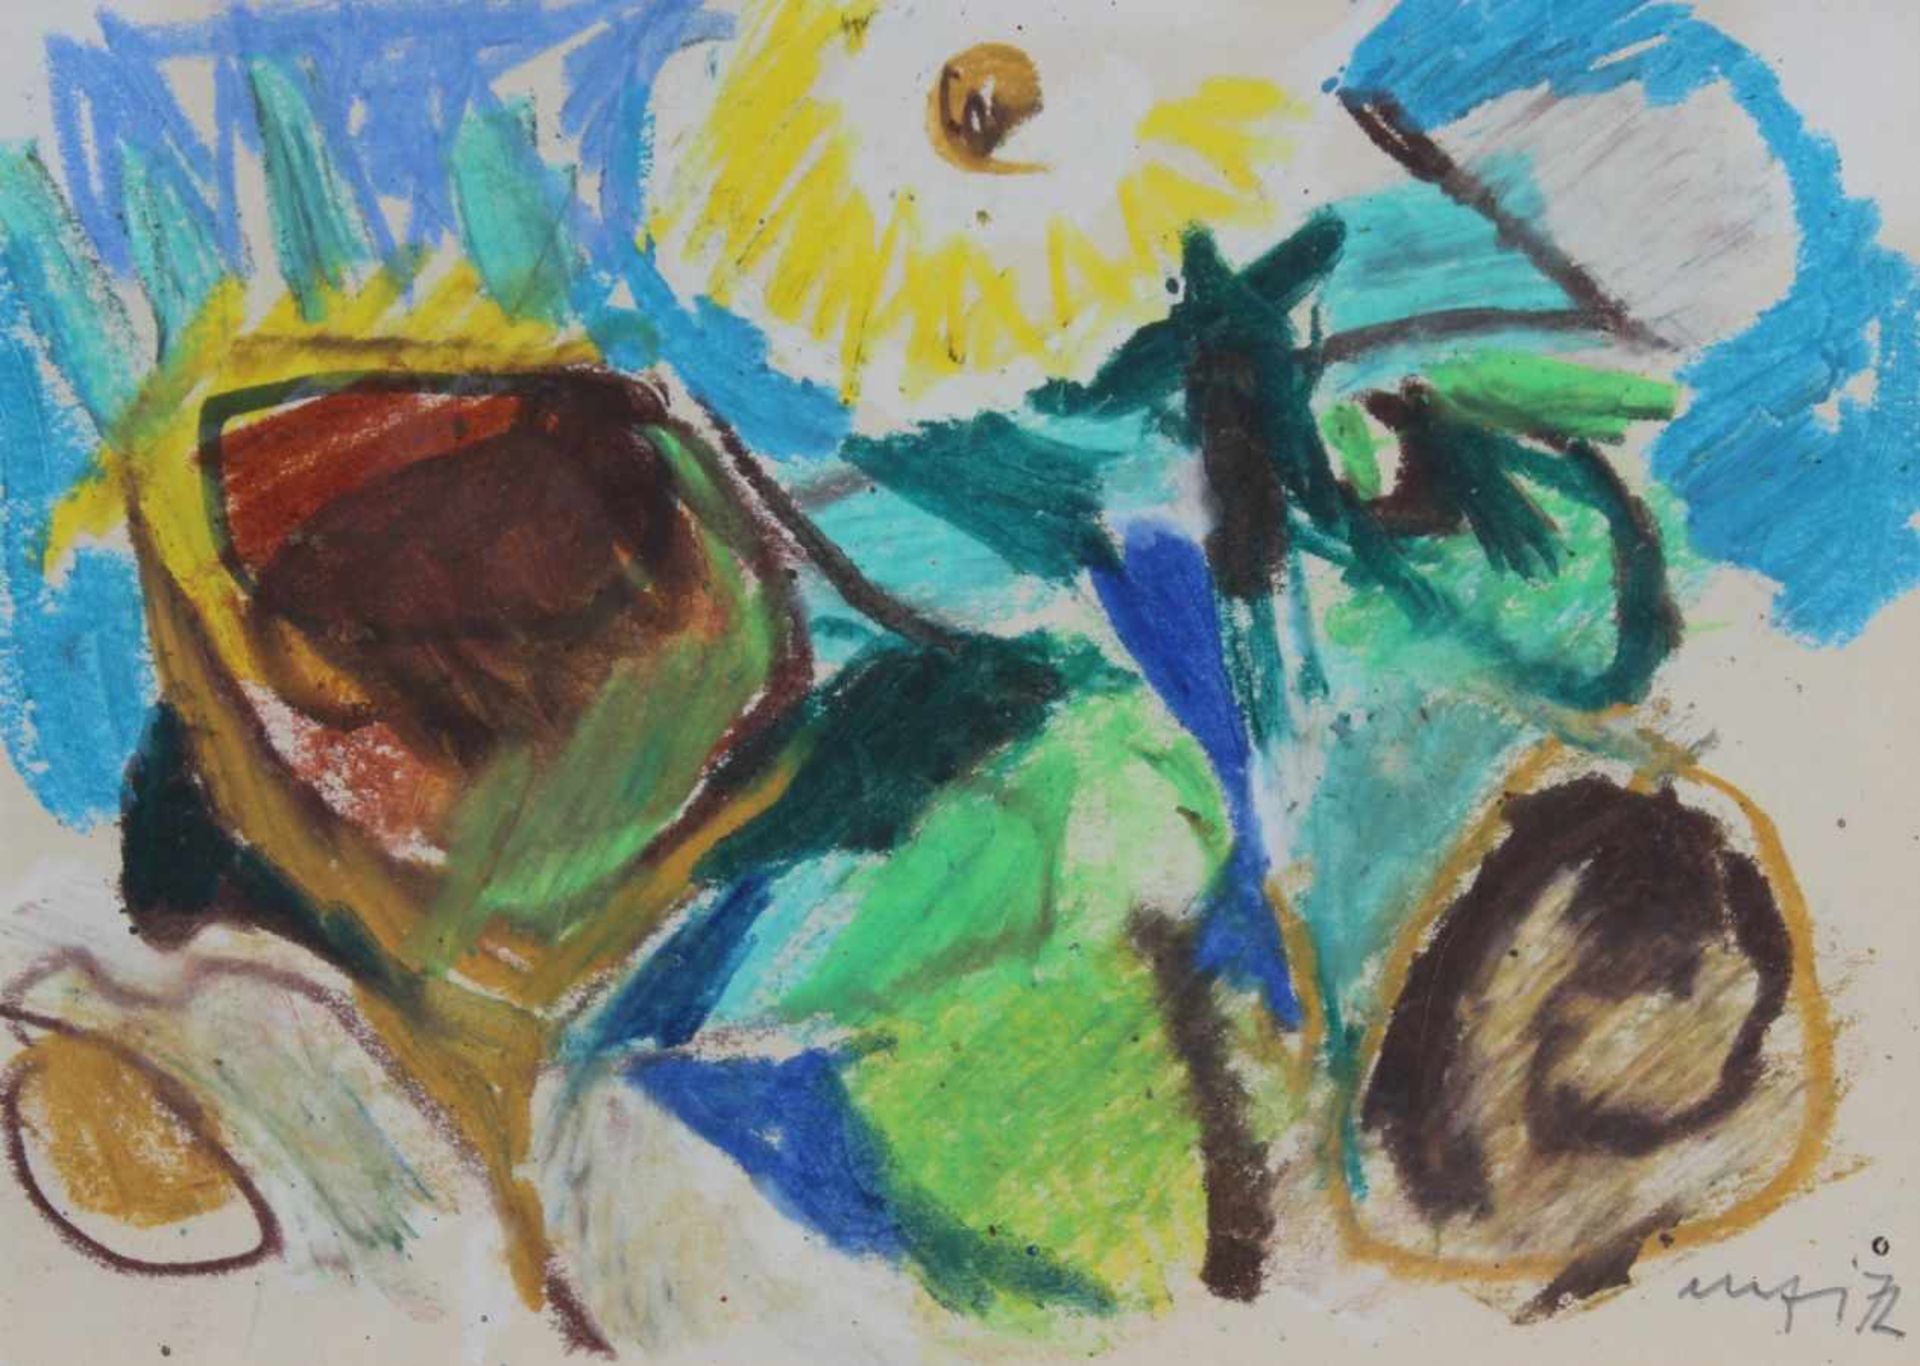 Zeichnung - Willi Ulfig (1910 Breslau - 1983 Regensburg) "Sonnenblume", r.u. signiert und datiert